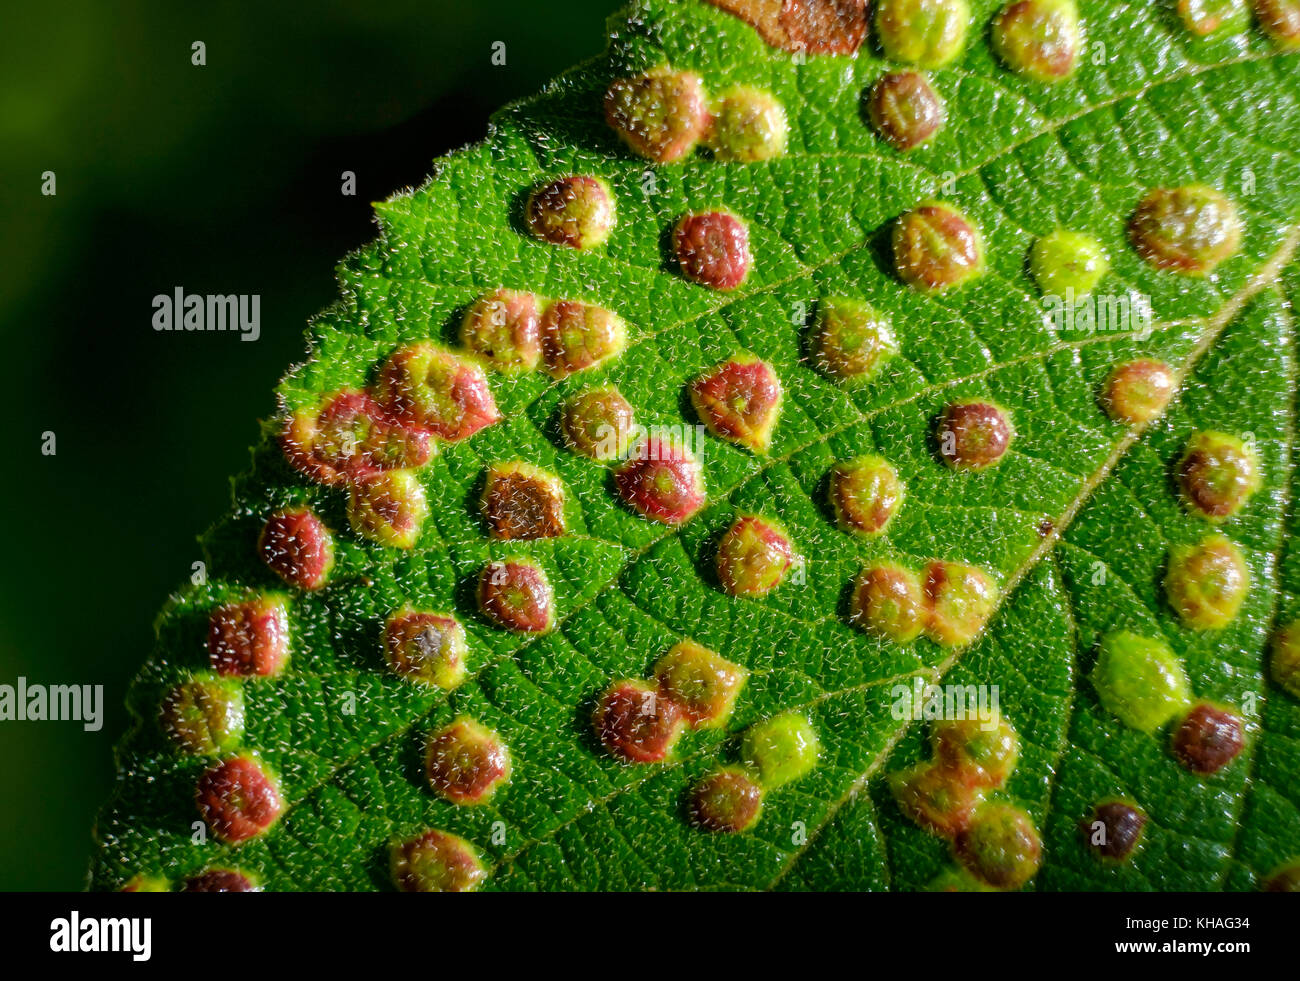 Gall or gall bladder of the gall mite (Phytoptus laevis) on leaf of Viburnum lantana (Viburnum lantana), Bavaria, Germany Stock Photo